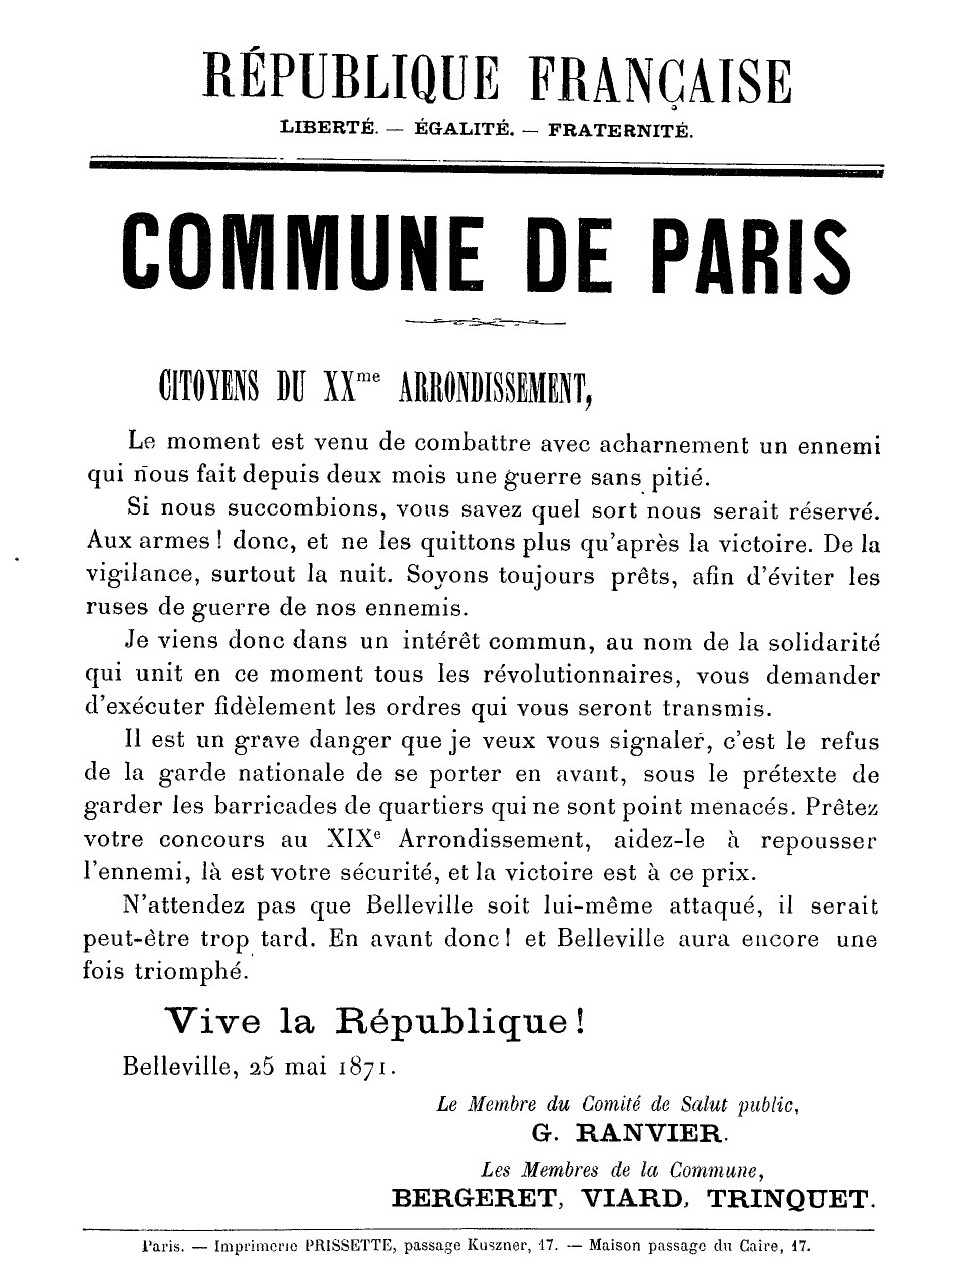 Dernière affiche de la Commune de Paris du 25 mai 1871 - Ranvier Paris 20ème (argonnaute.parisnanterre.fr)